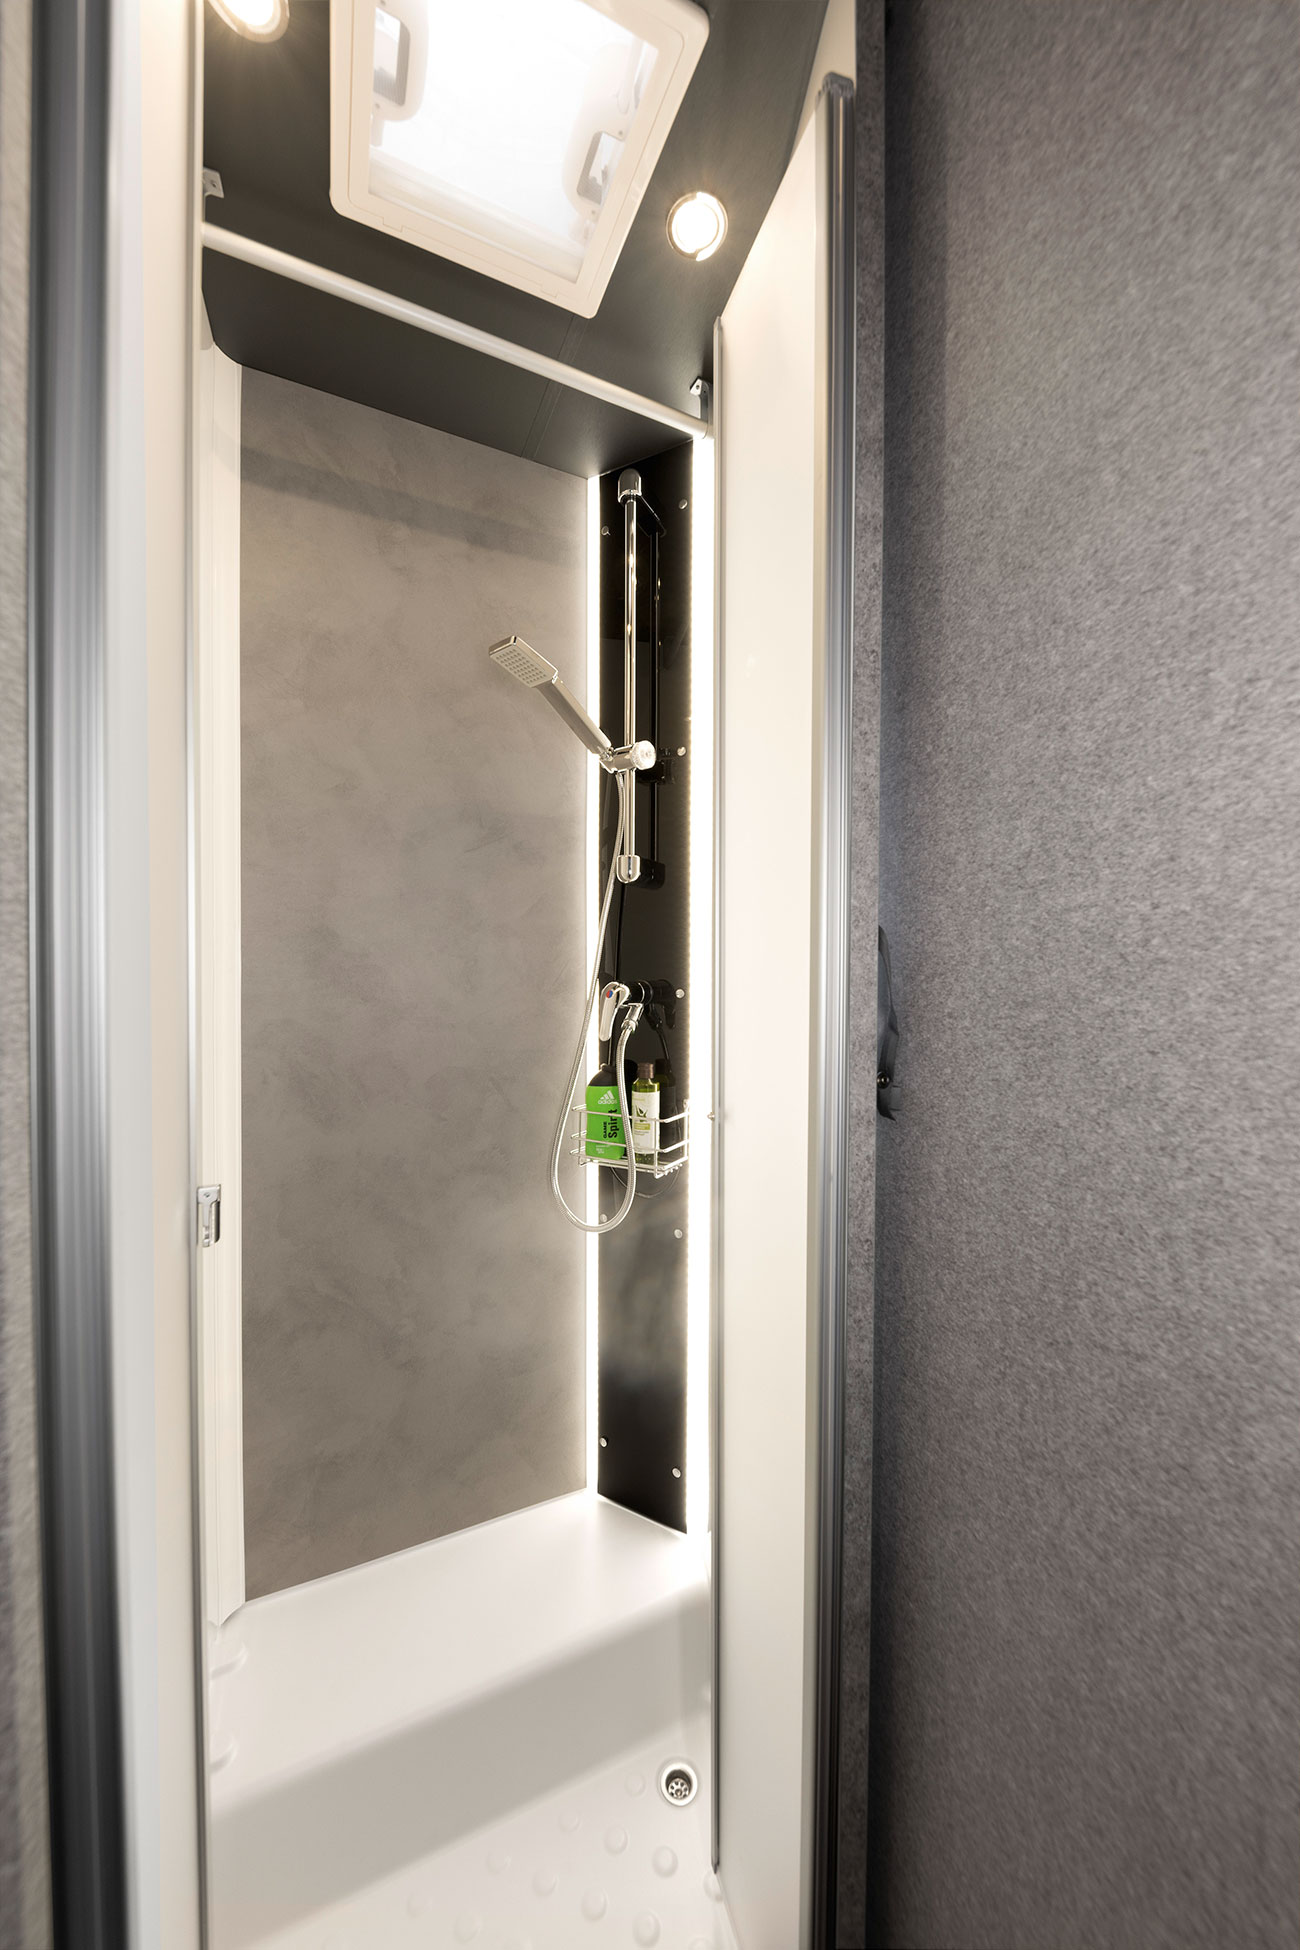 La ducha ofrece una gran libertad de movimientos y tiene un diseño elegante. La columna de ducha viene de serie con iluminación indirecta, aportando un ambiente de lo más agradable.